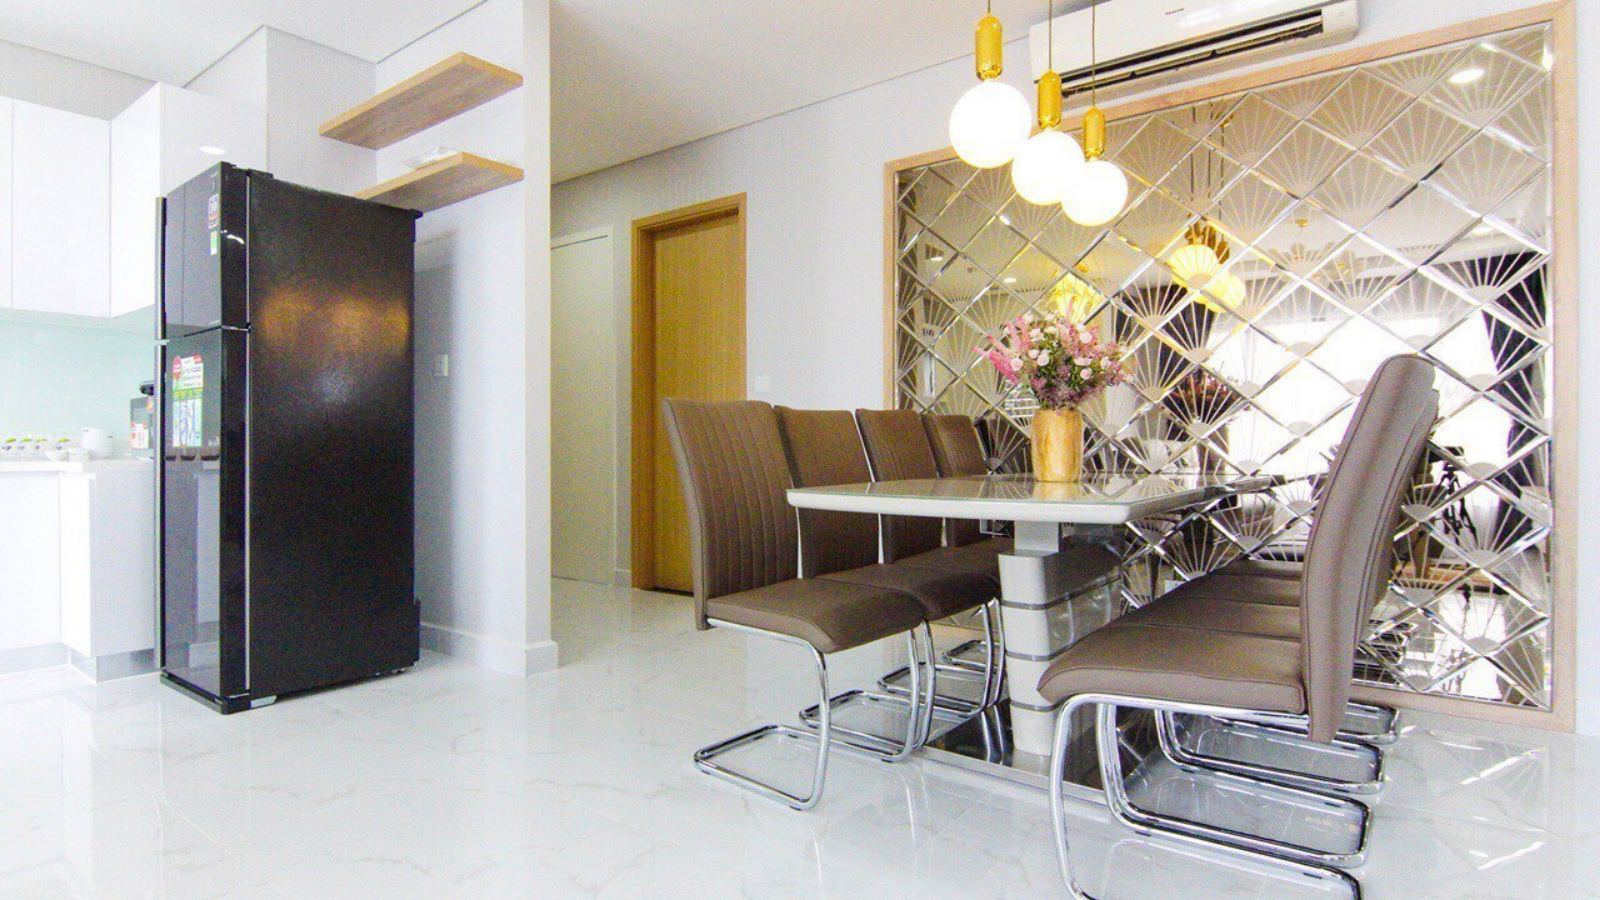 Bán căn hộ Angia Skyline Q7 full nội thất cực đẹp căn góc 3PN. LH: em Linh - 090 39 32 348